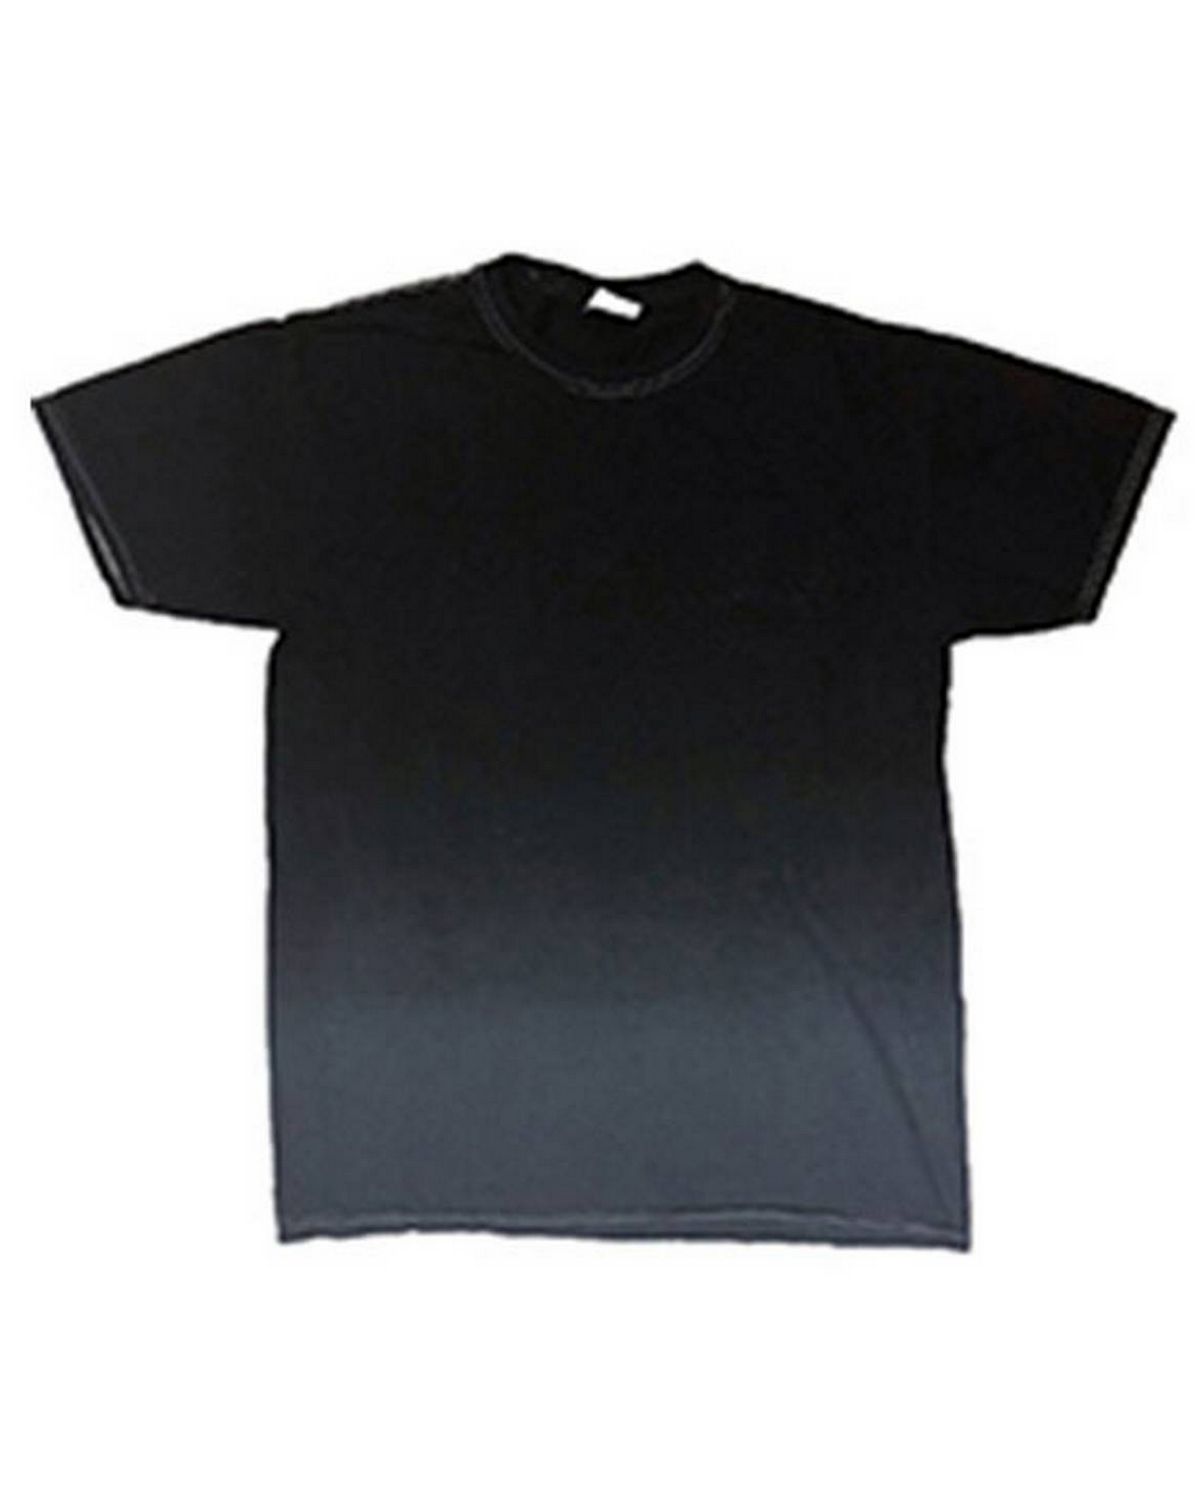 Tie-Dye 1370 Adult 100% Cotton Ombre Dip-Dye T-Shirt